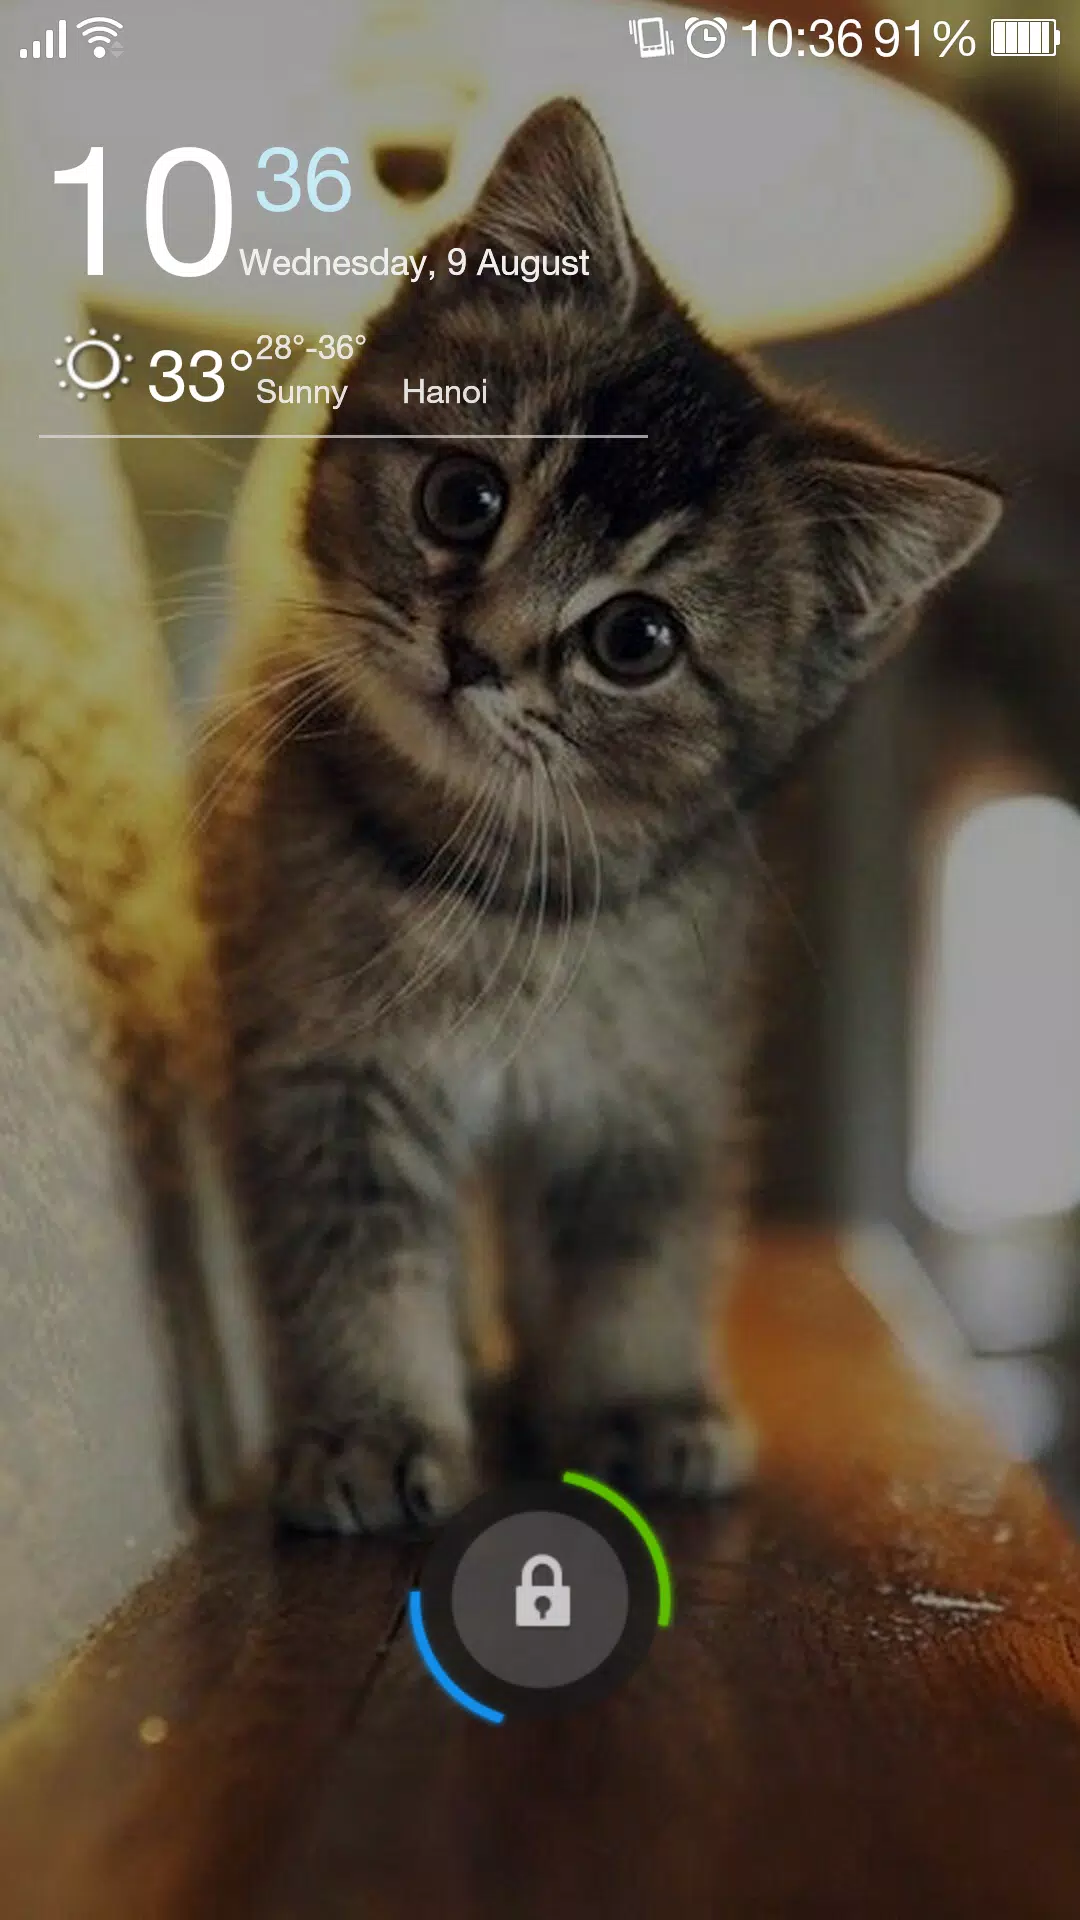 Tải xuống APK Hình Nền Mèo Dễ Thương & Màn Hình Khóa QHD cho Android